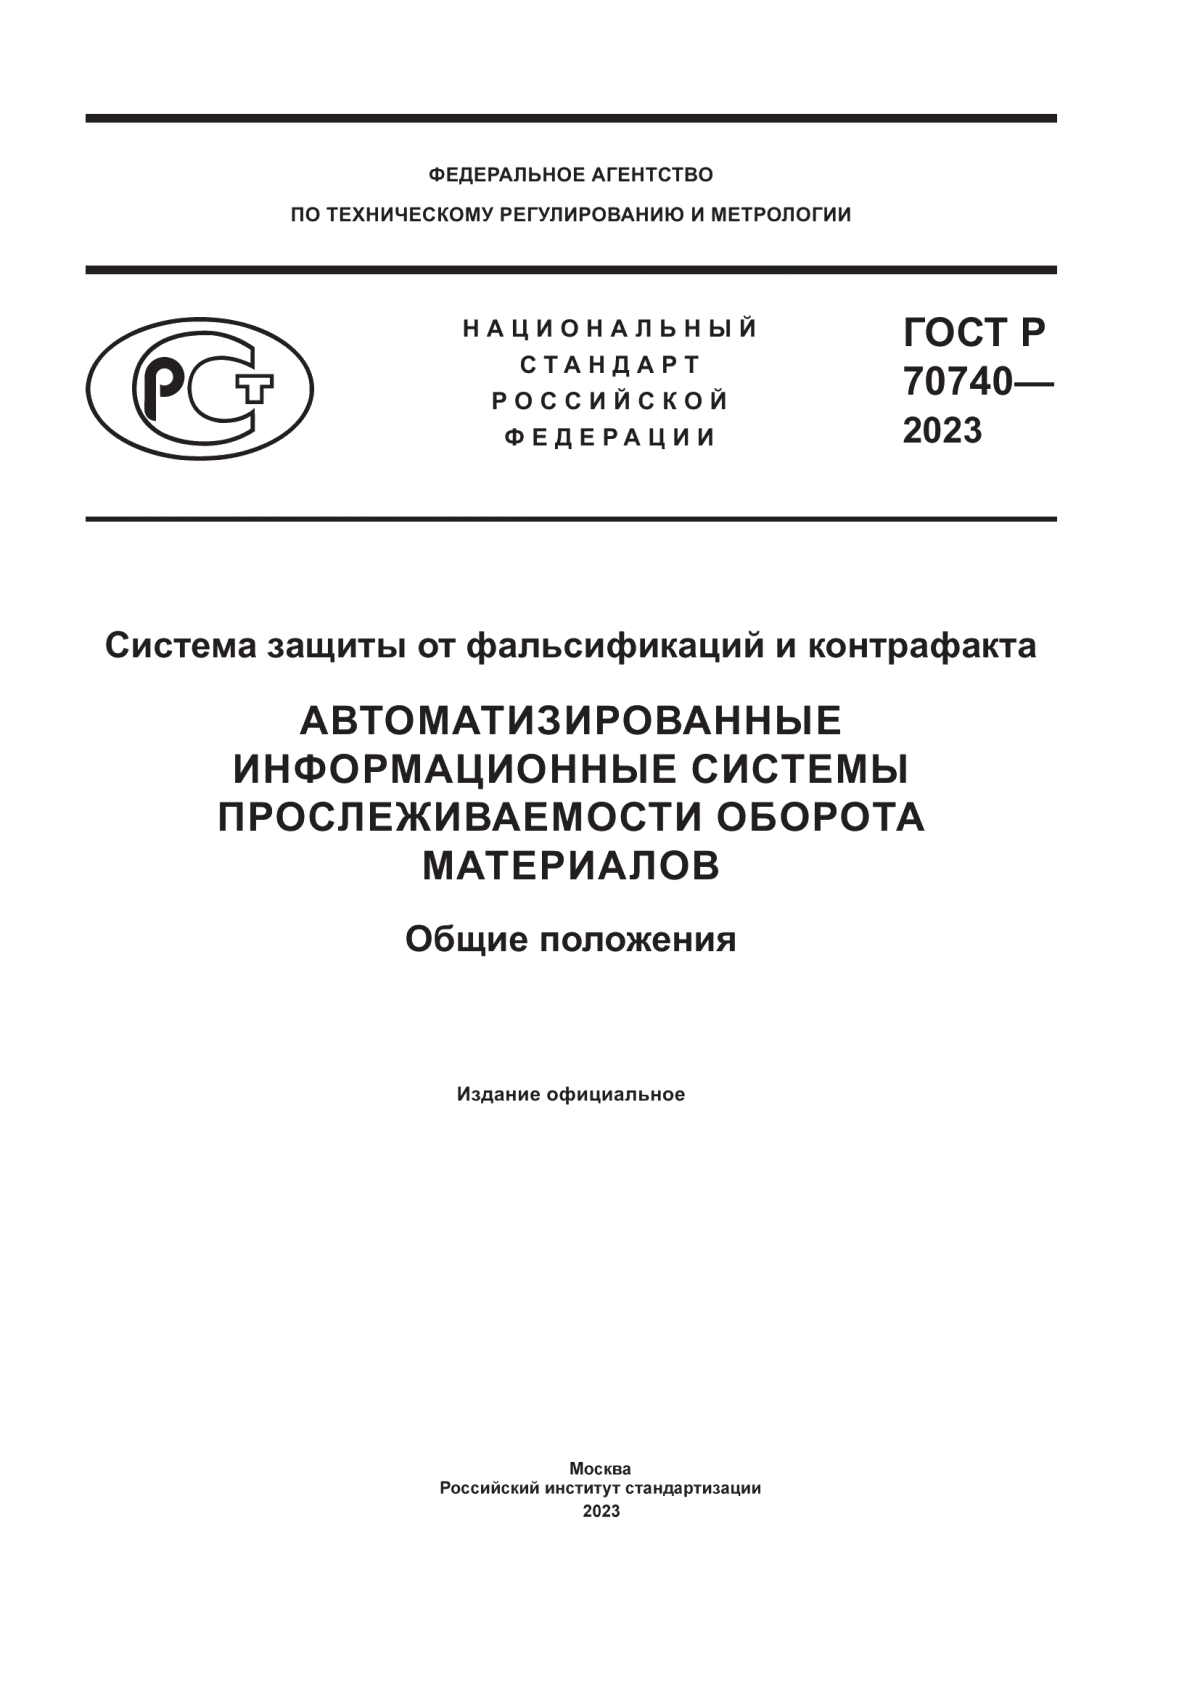 ГОСТ Р 70740-2023 Система защиты от фальсификаций и контрафакта. Автоматизированные информационные системы прослеживаемости оборота материалов. Общие положения